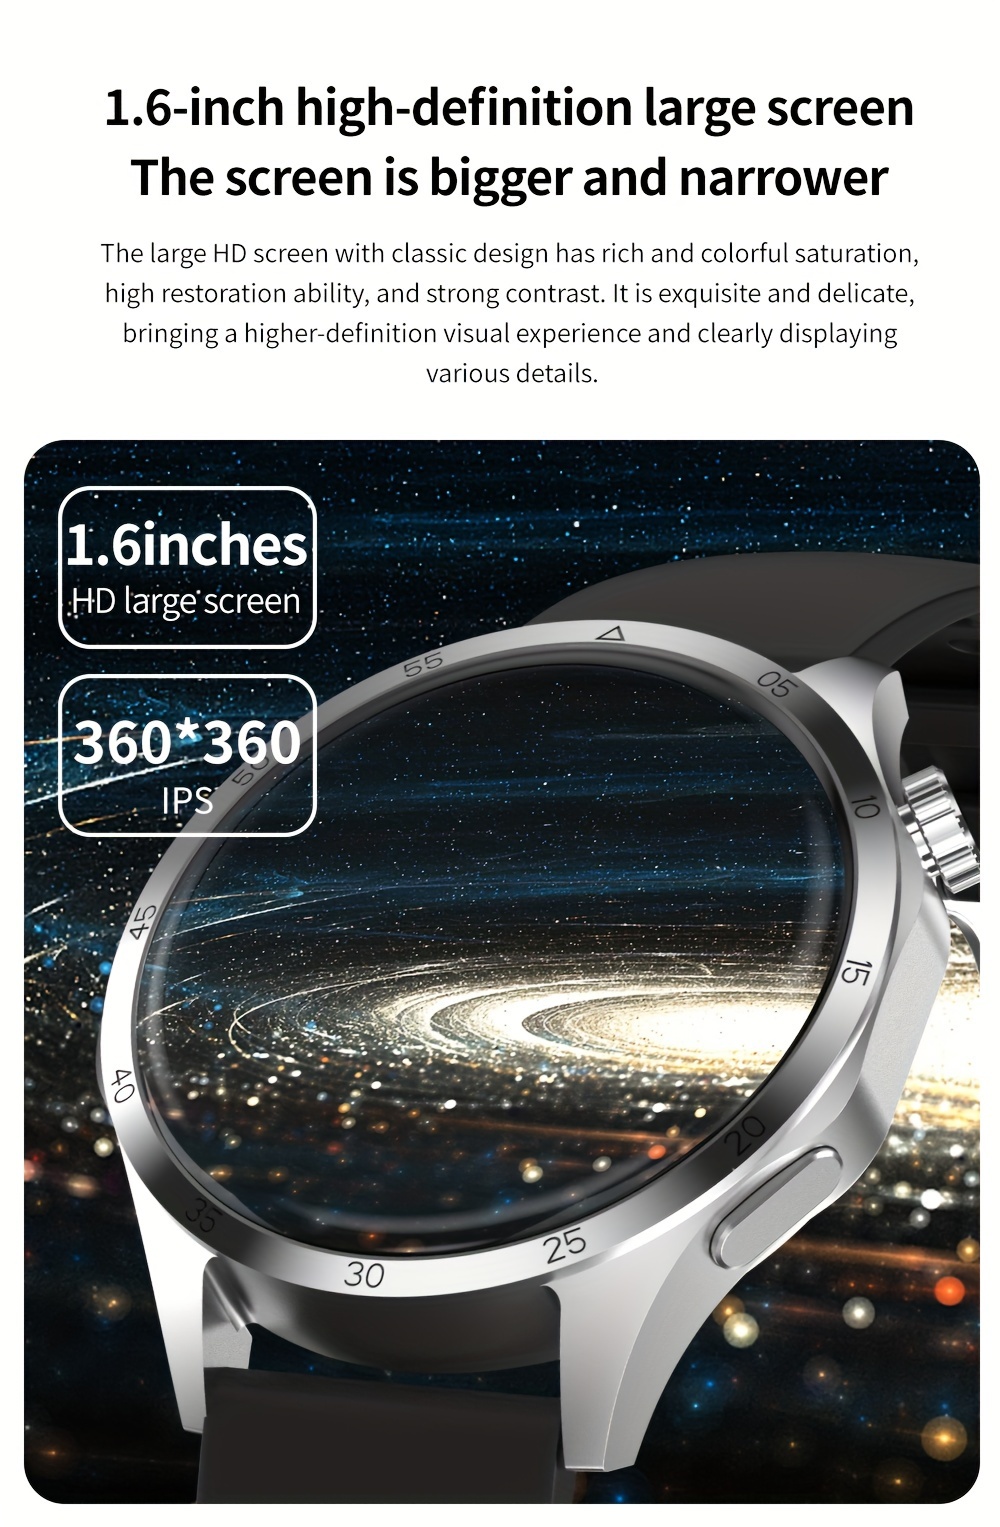 GT4 Pro Reloj inteligente de 1.6 pulgadas, visualización grande